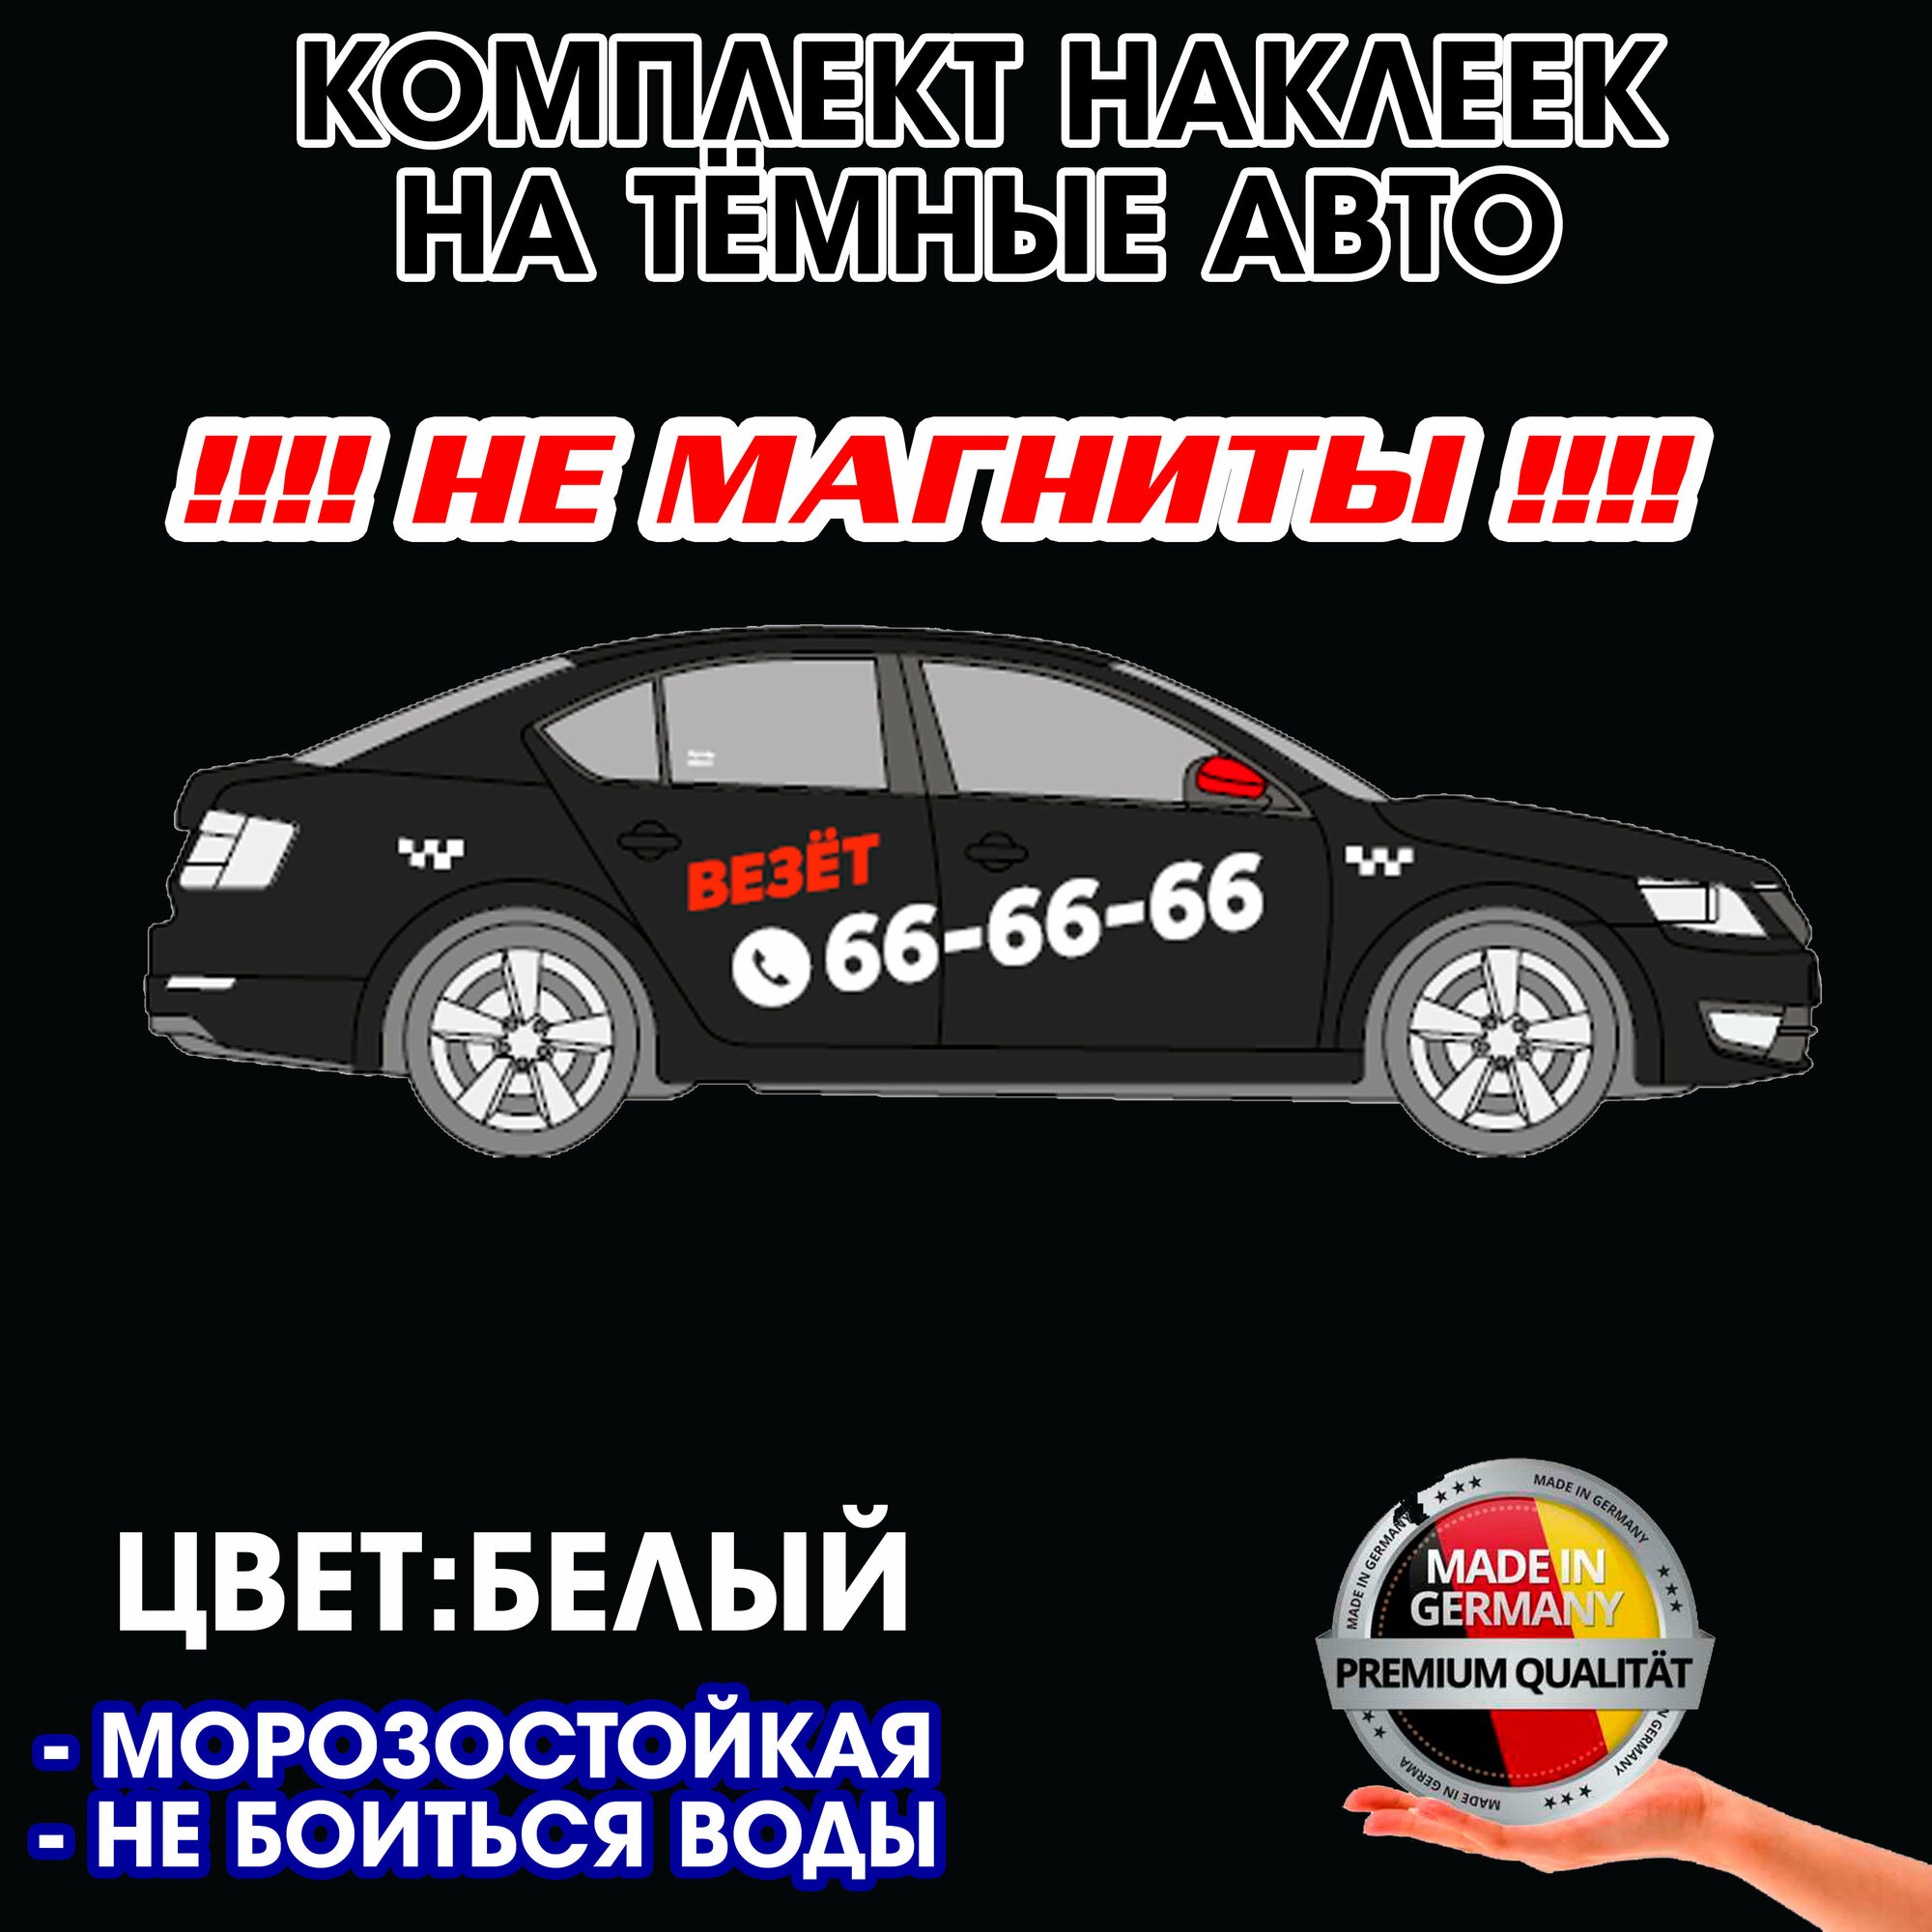 Такси везет - Комплект наклеек для самостоятельного брендирования на тёмные авто